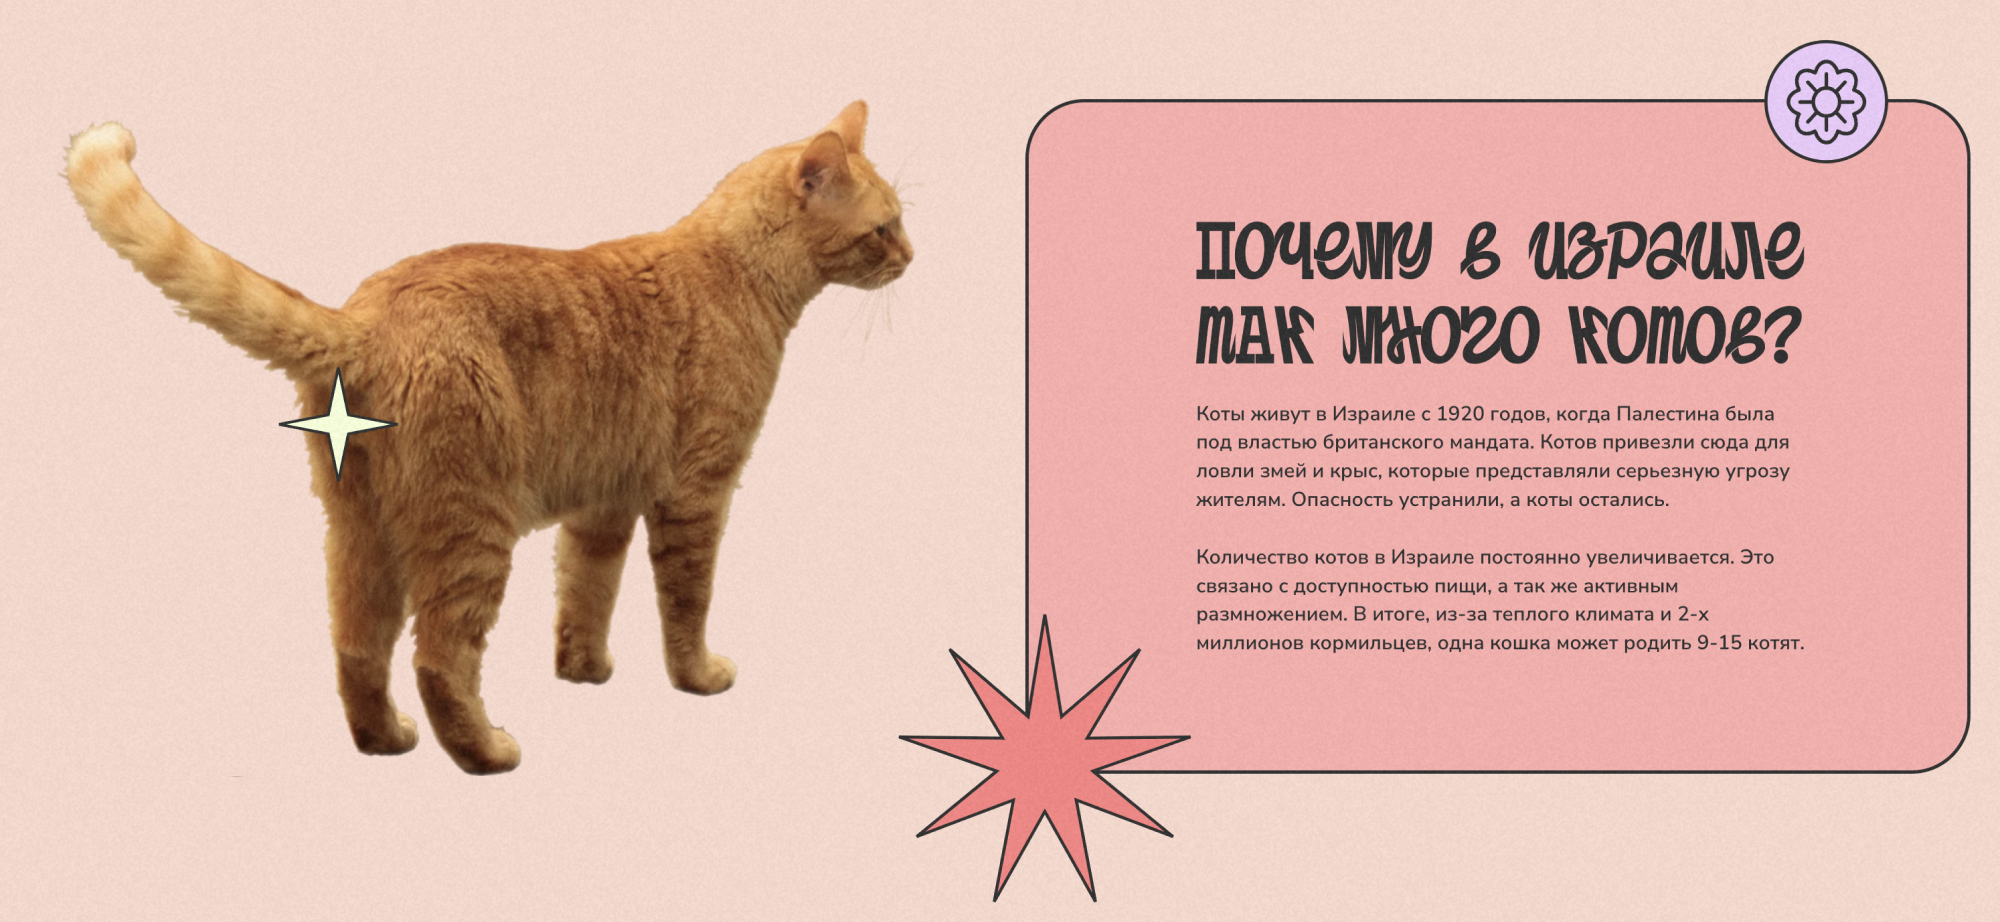 В Израиле появился сайт про уличных кошек. Там можно узнать, откуда в стране так много бездомных кошек, как им помочь и так далее